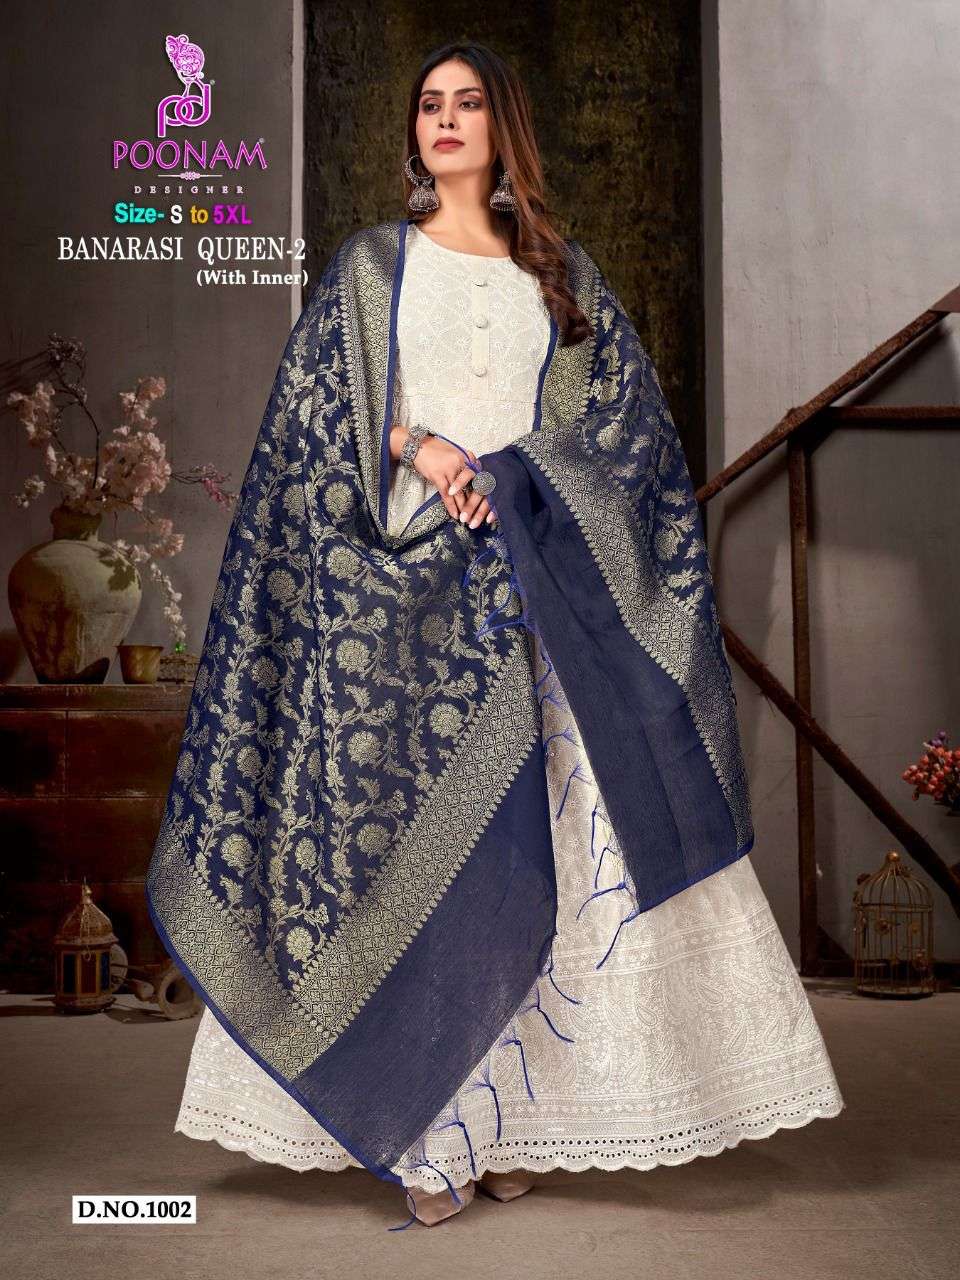 poonam designer banarasi queen vol-2 1001-1006 series fancy gown with dupatta collection surat